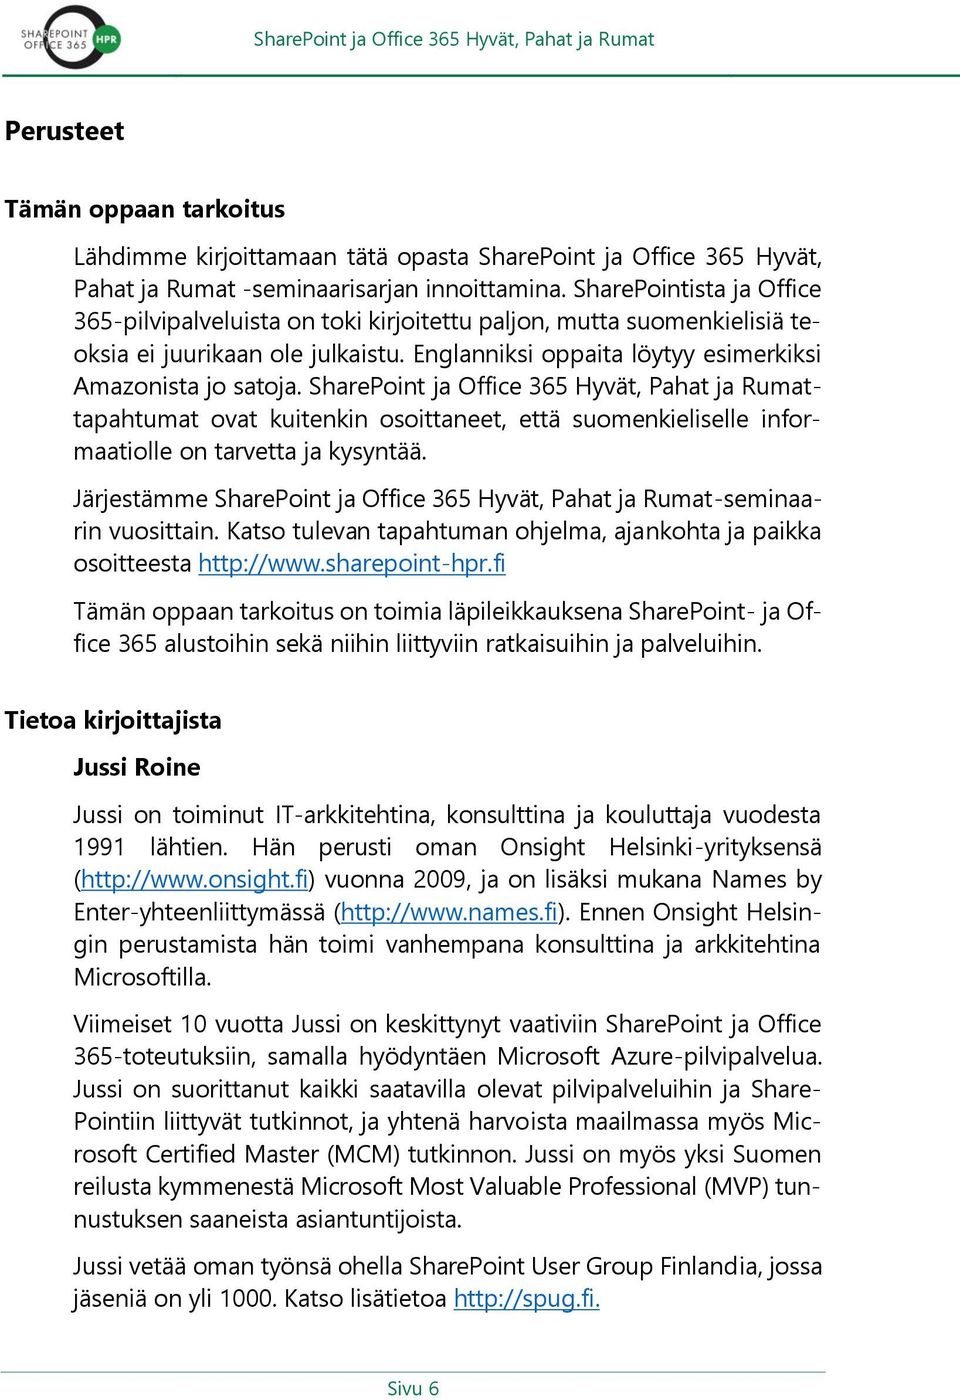 SharePoint ja Office 365 Hyvät, Pahat ja Rumattapahtumat ovat kuitenkin osoittaneet, että suomenkieliselle informaatiolle on tarvetta ja kysyntää.